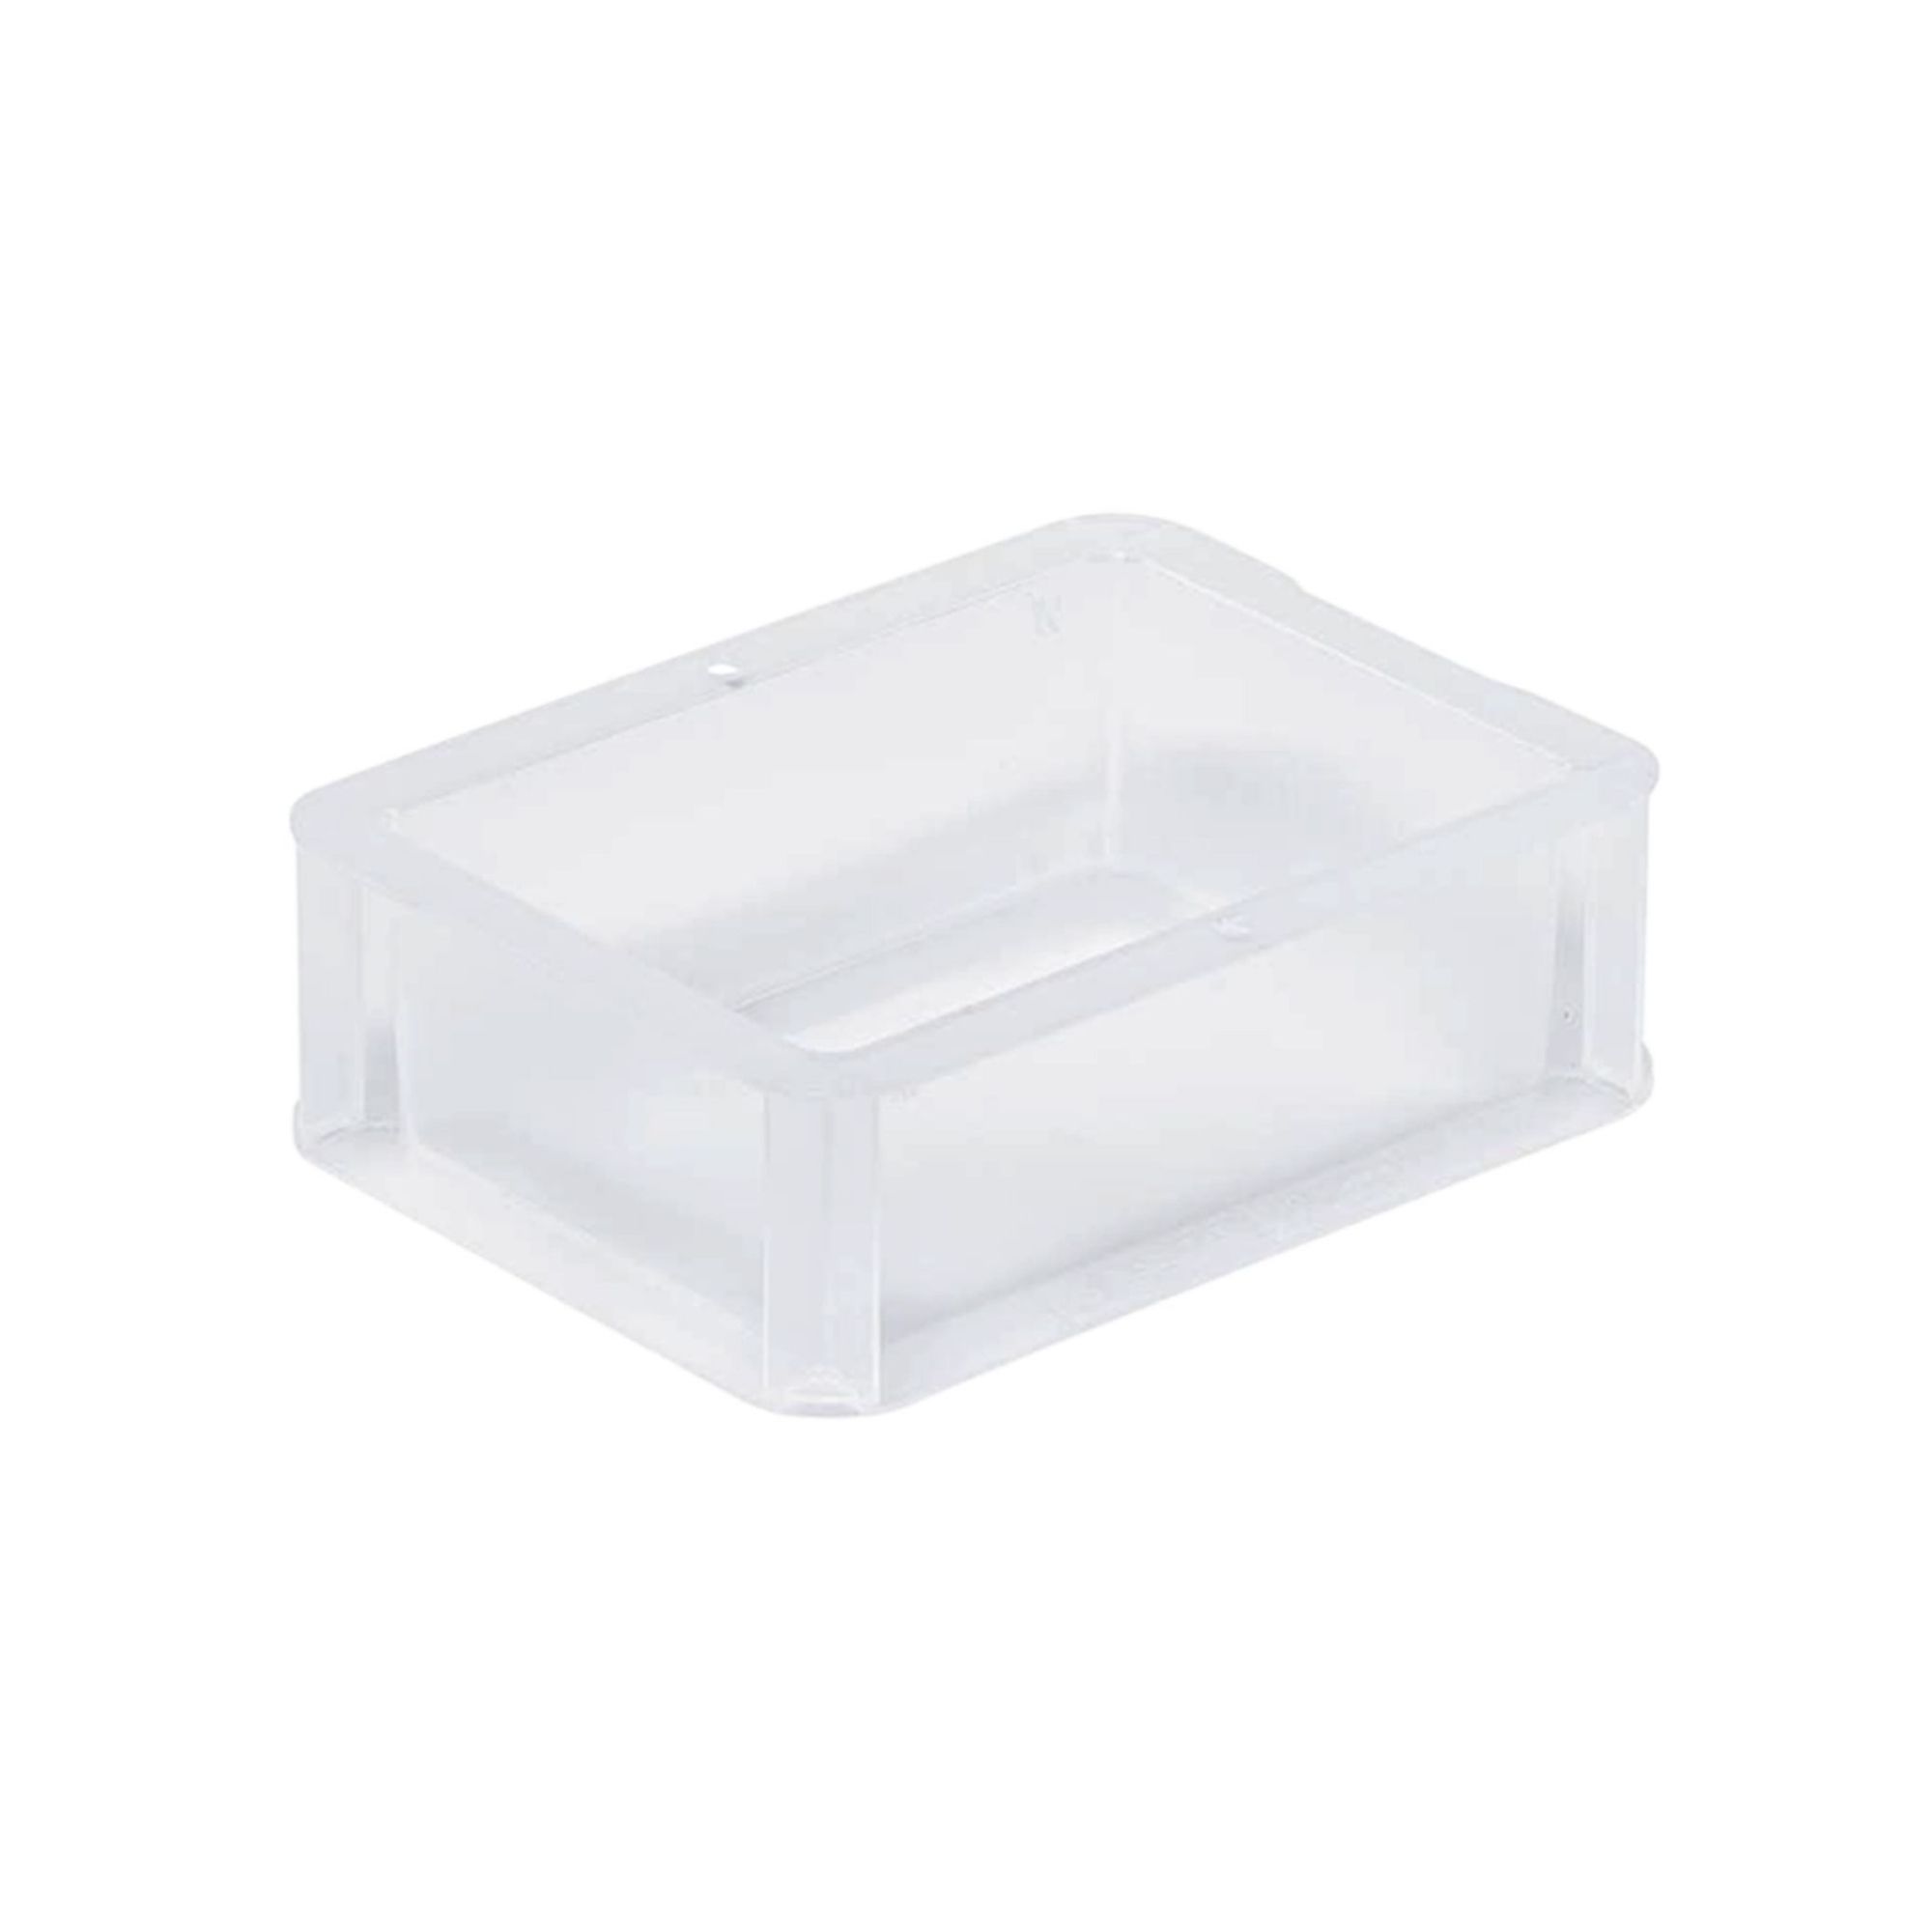 Transparenter Eurobehälter BasicLine mit geschlossenem Griff | HxBxT 7x15x20cm | 1,3 Liter | Eurobox, Transportbox, Transportbehälter, Stapelbehälter